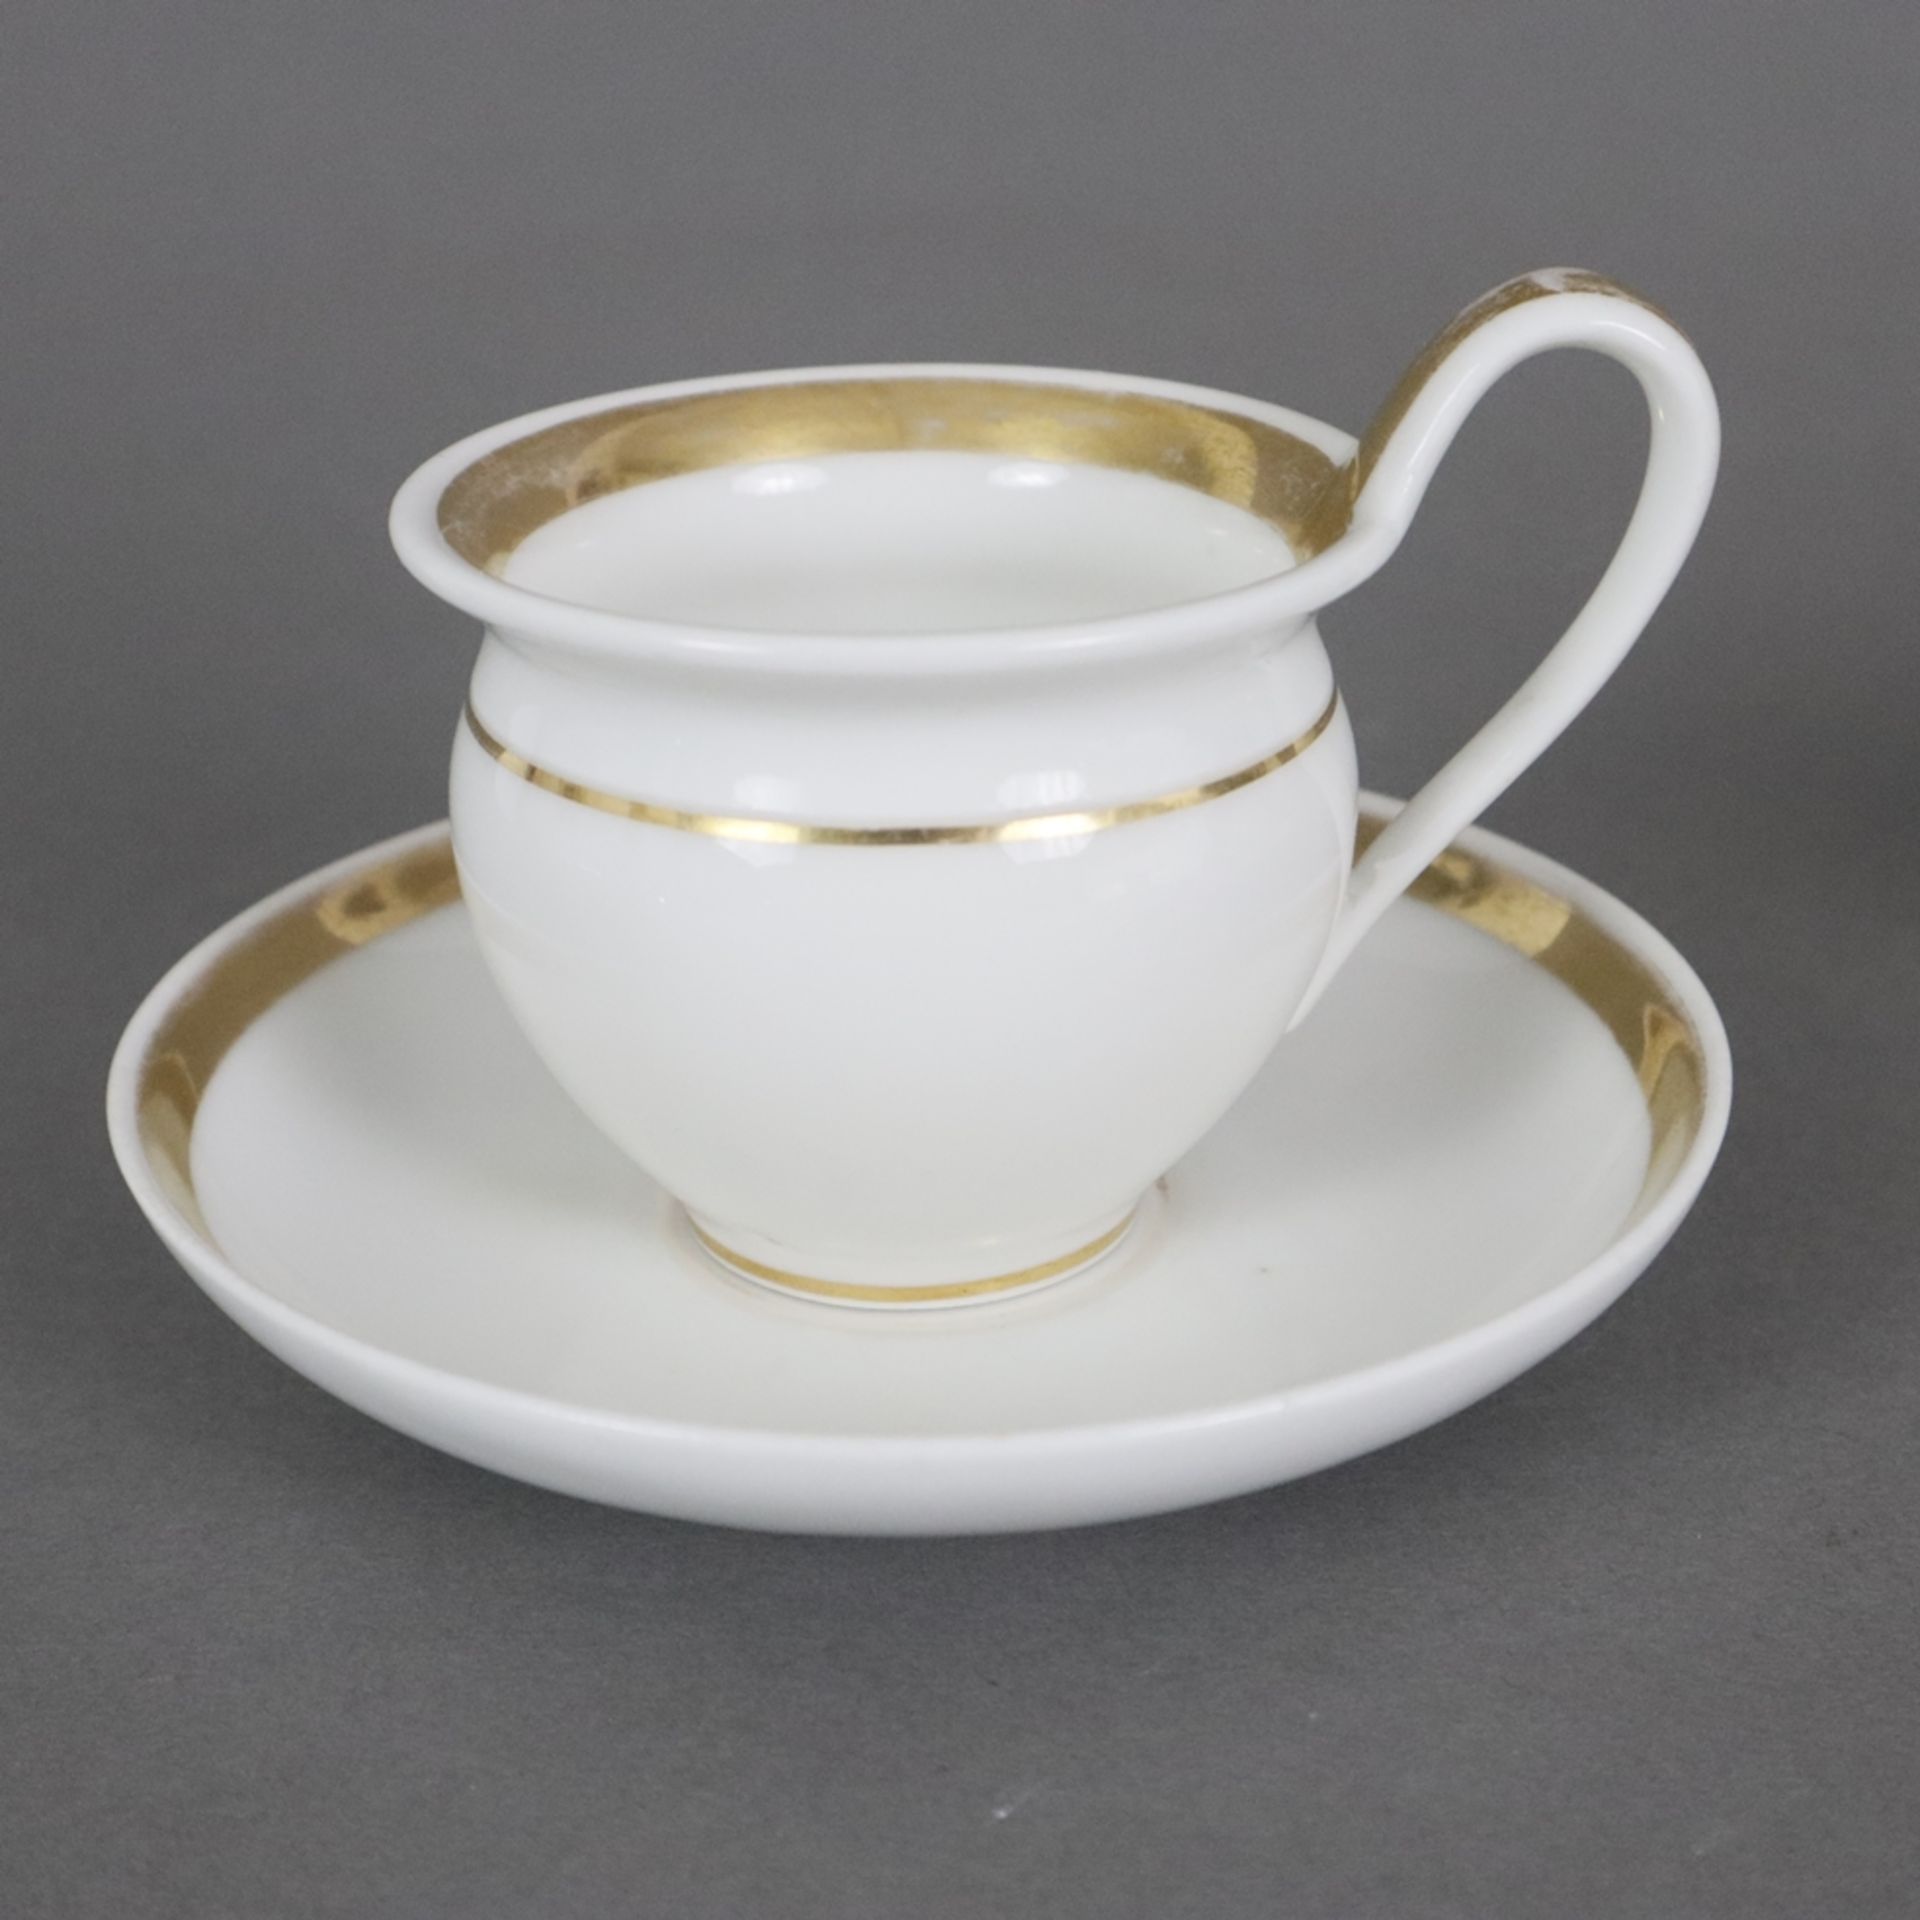 Russische Teekanne und zwei Empire-Tassen - Porzellan, 1x kleine Teekanne, Lomonosov, St. Petersbur - Image 2 of 10